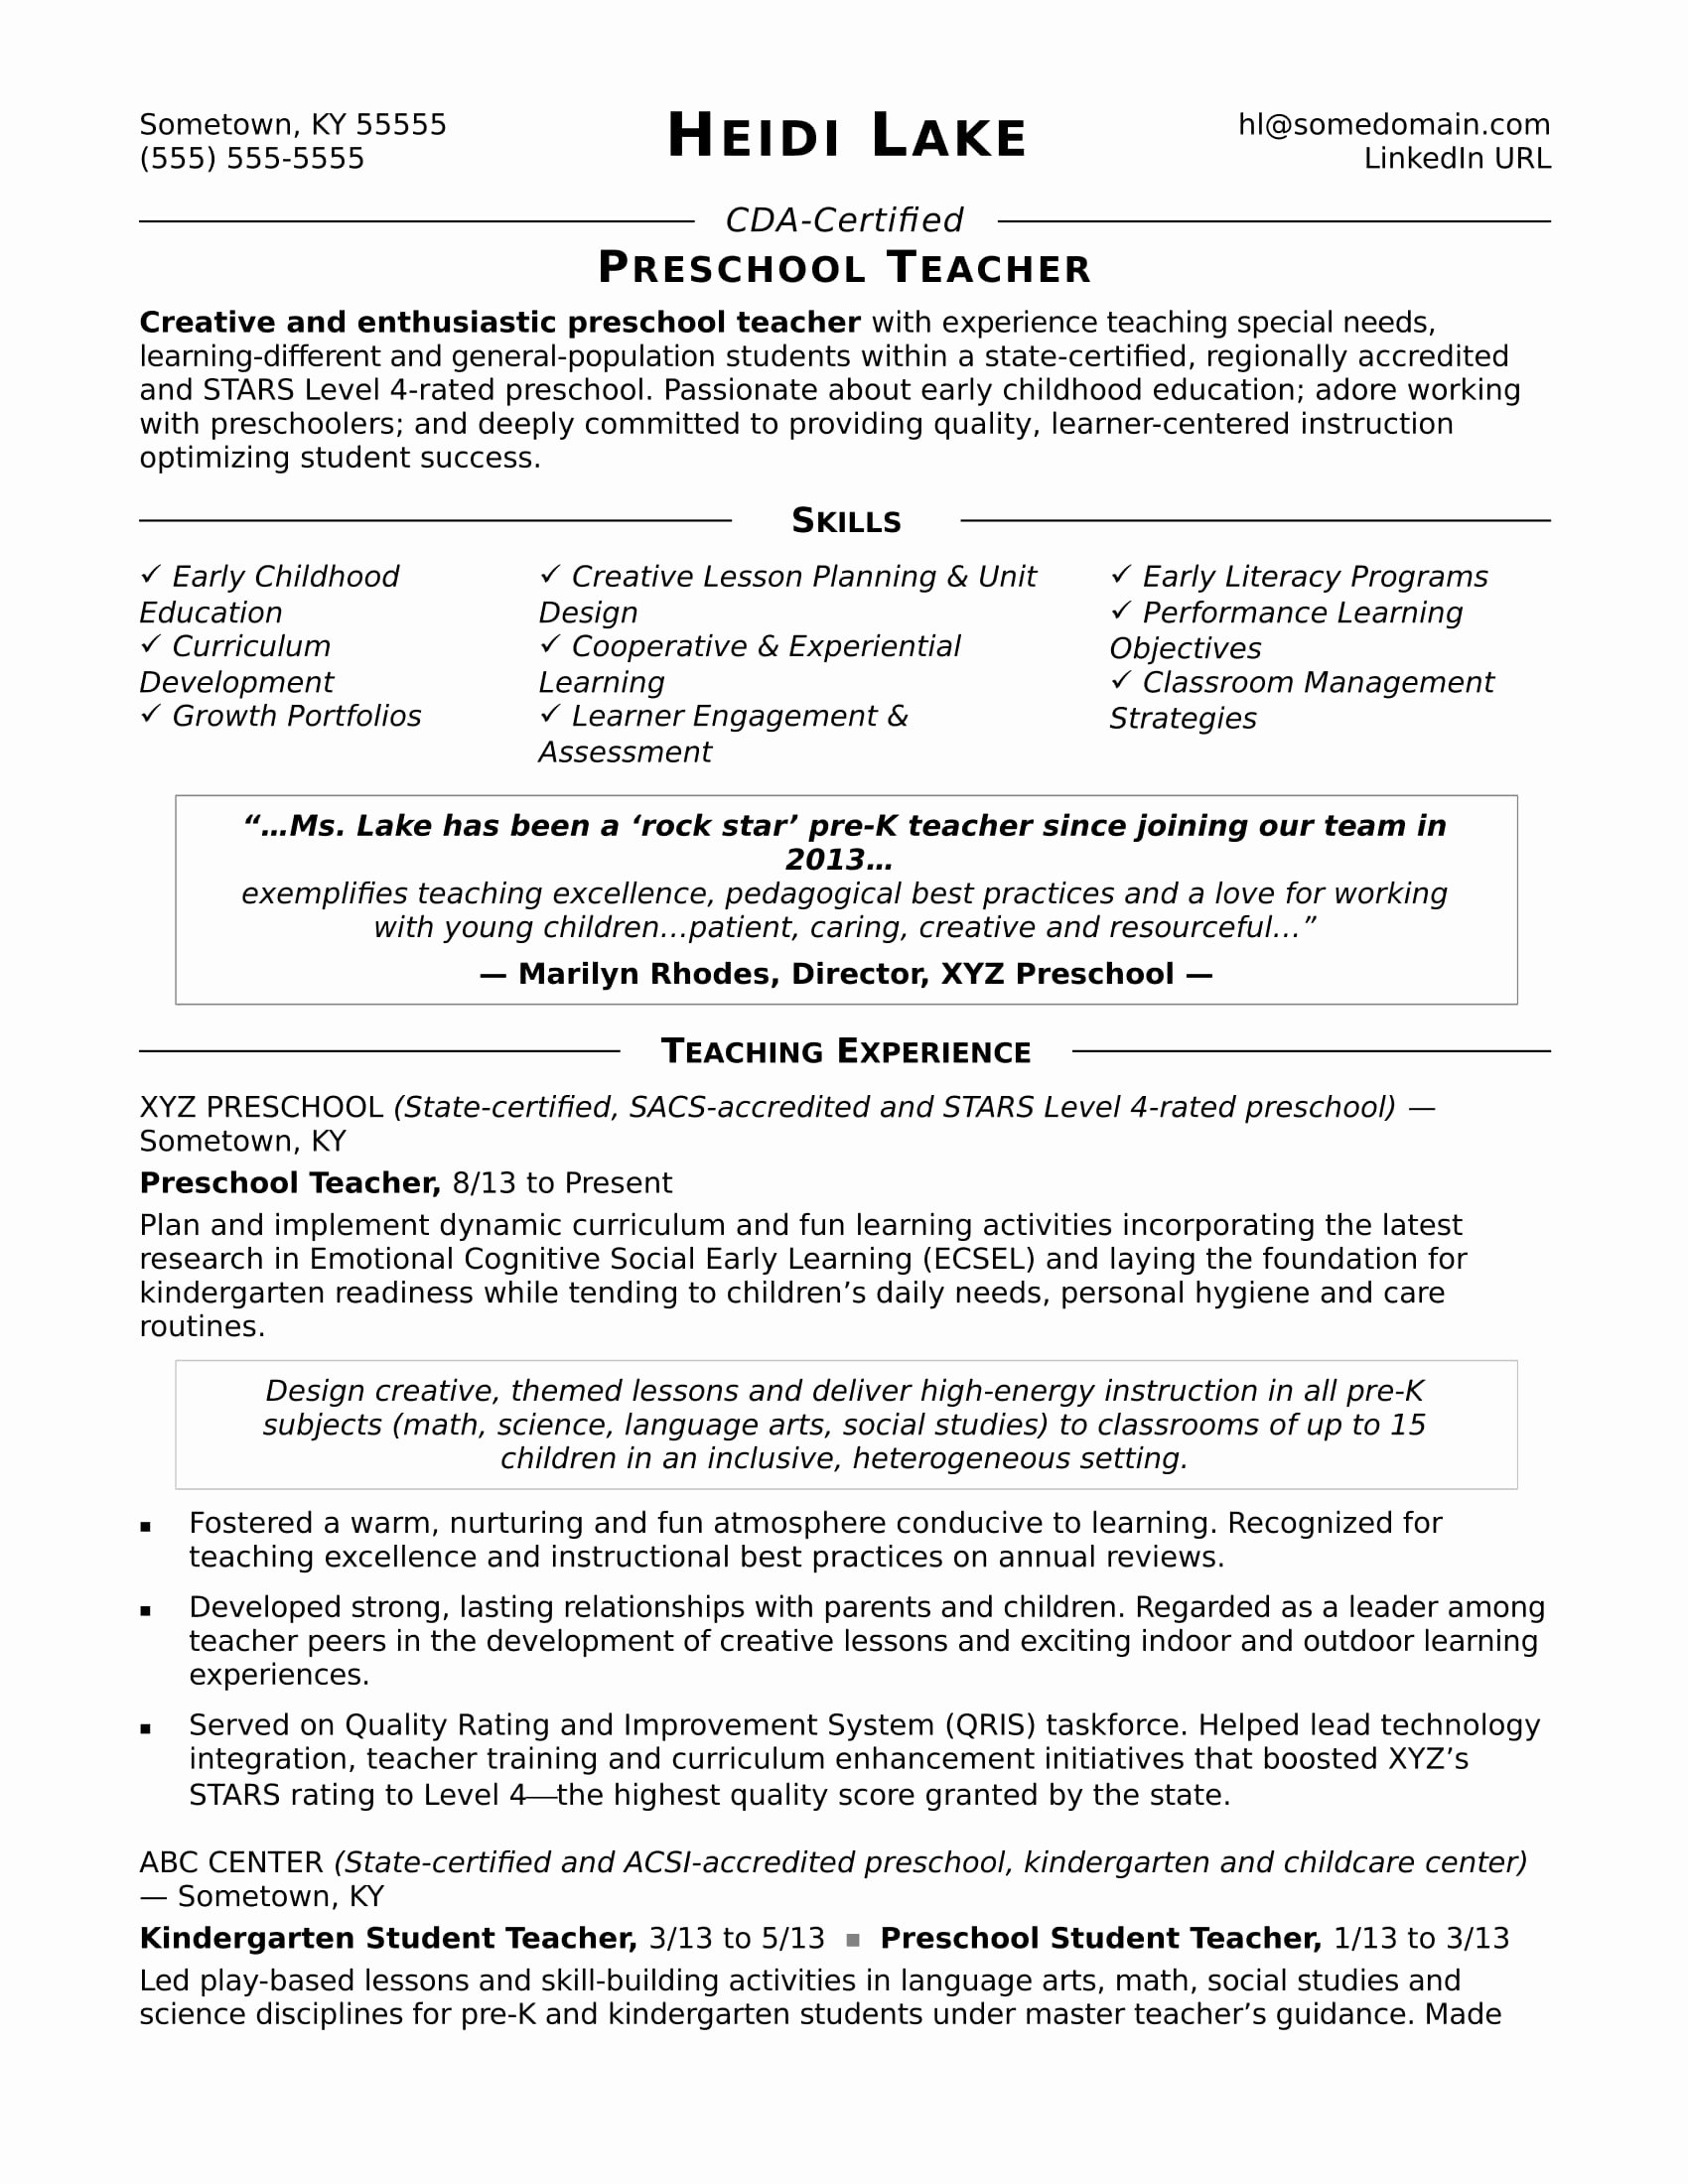 Free Sample Resume for Teachers Inspirational Preschool Teacher Resume Sample